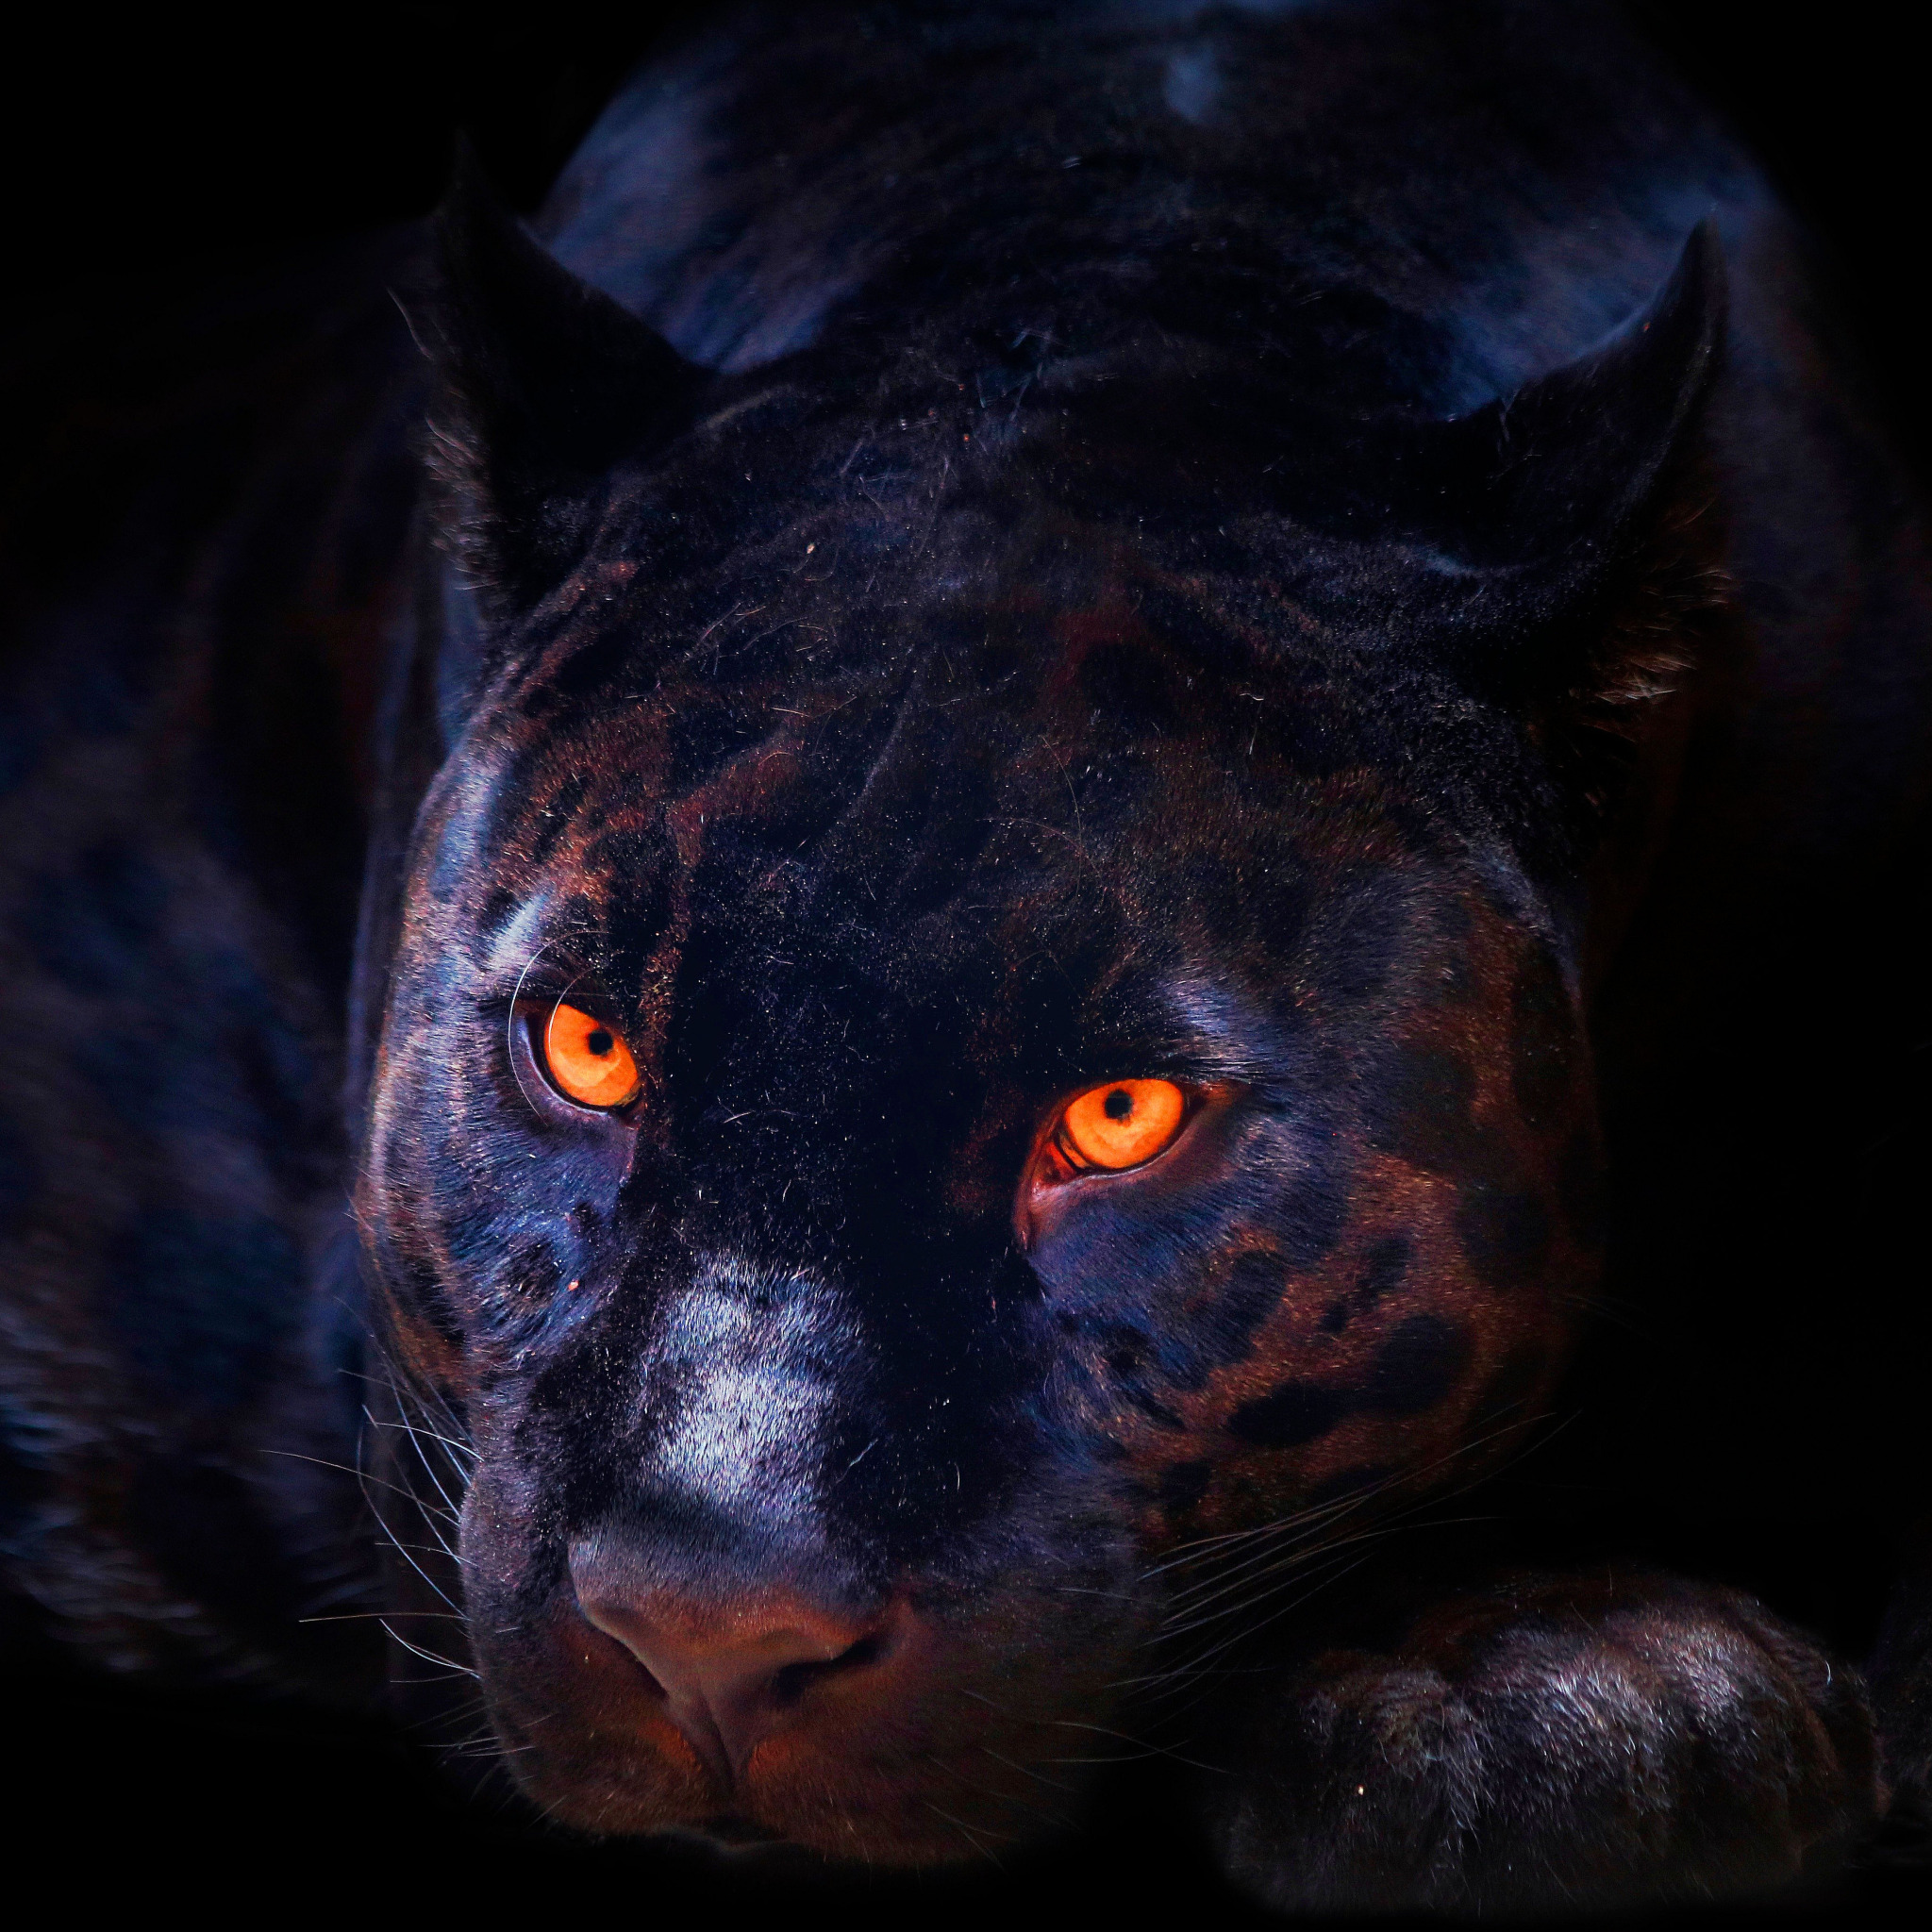 фанфик глаза пантеры светятся в ночи фото 28